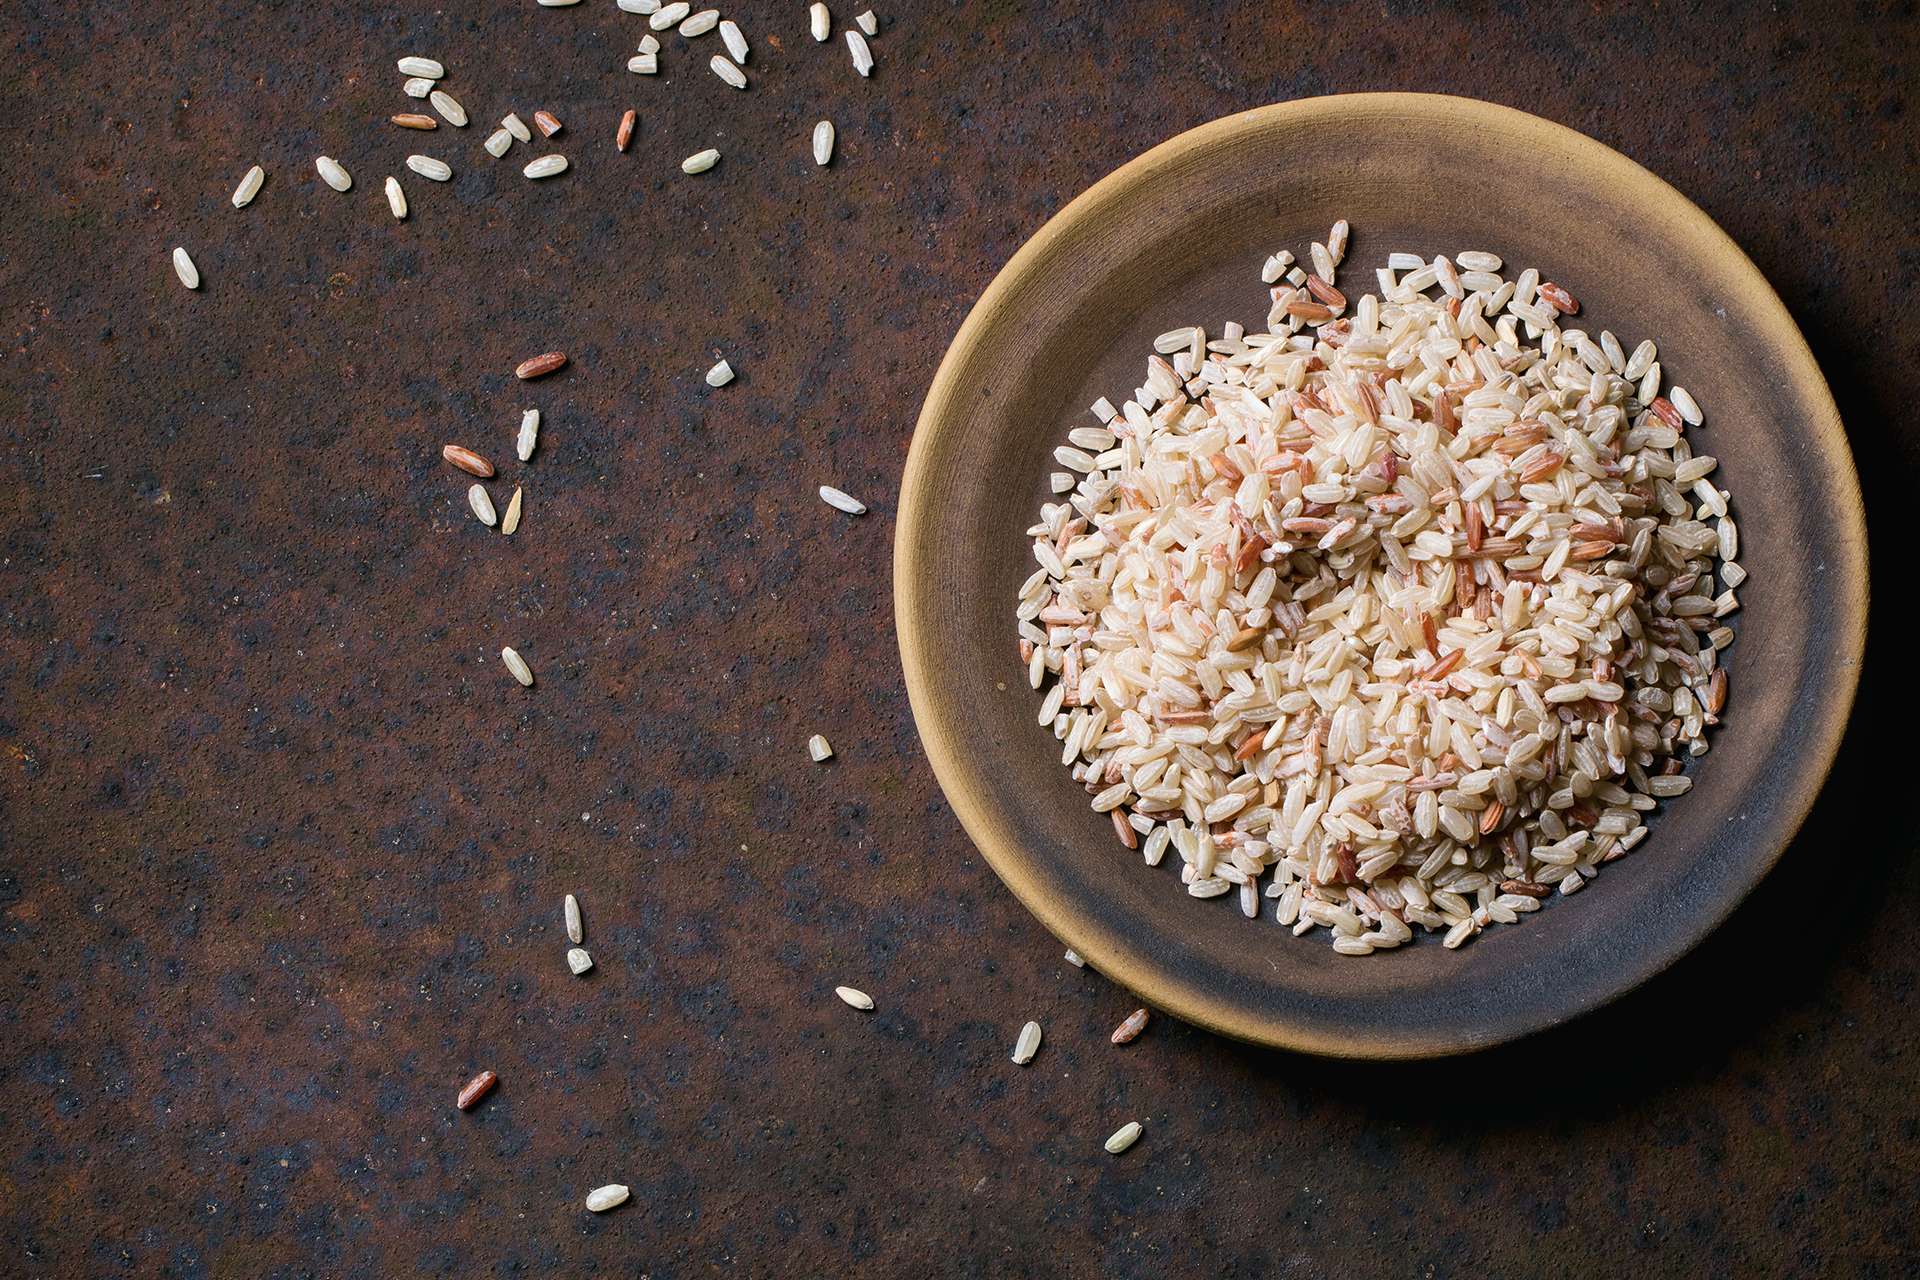 Raffreddare il riso in cottura permette di ottenere benifici da questo particolare amidaceo